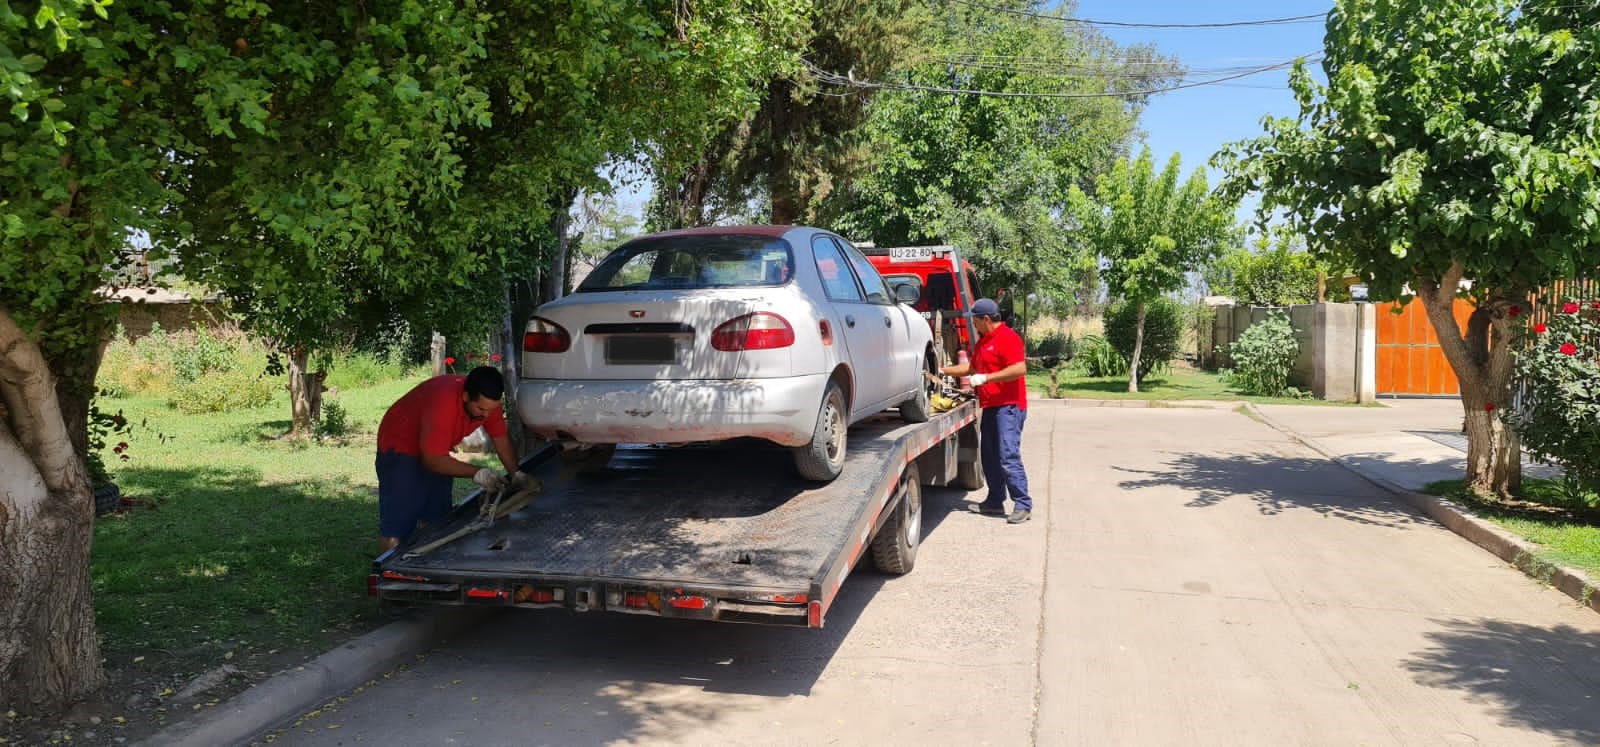 SAN ESTEBAN: Municipio inicia el retiro de vehículos abandonados para evitar inseguridad en la comuna